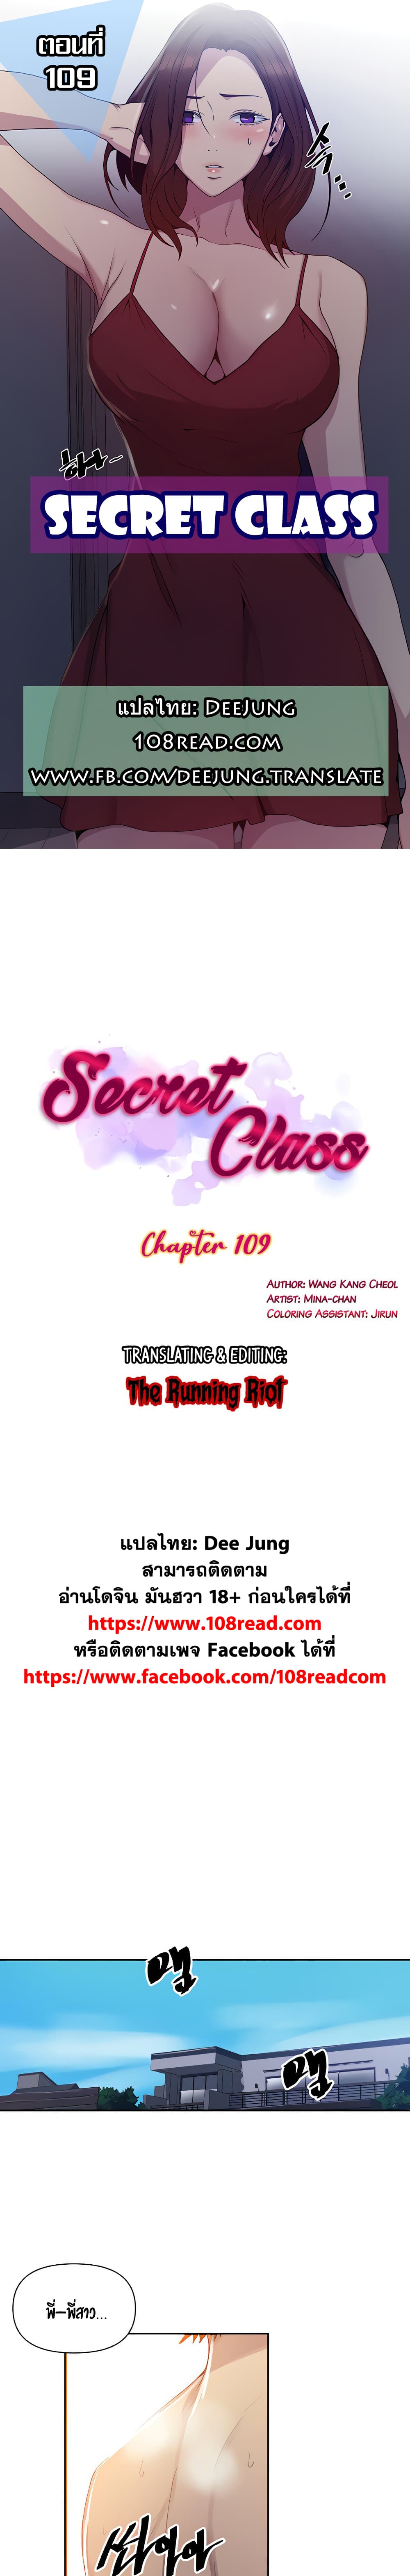 Secret Class 109-109